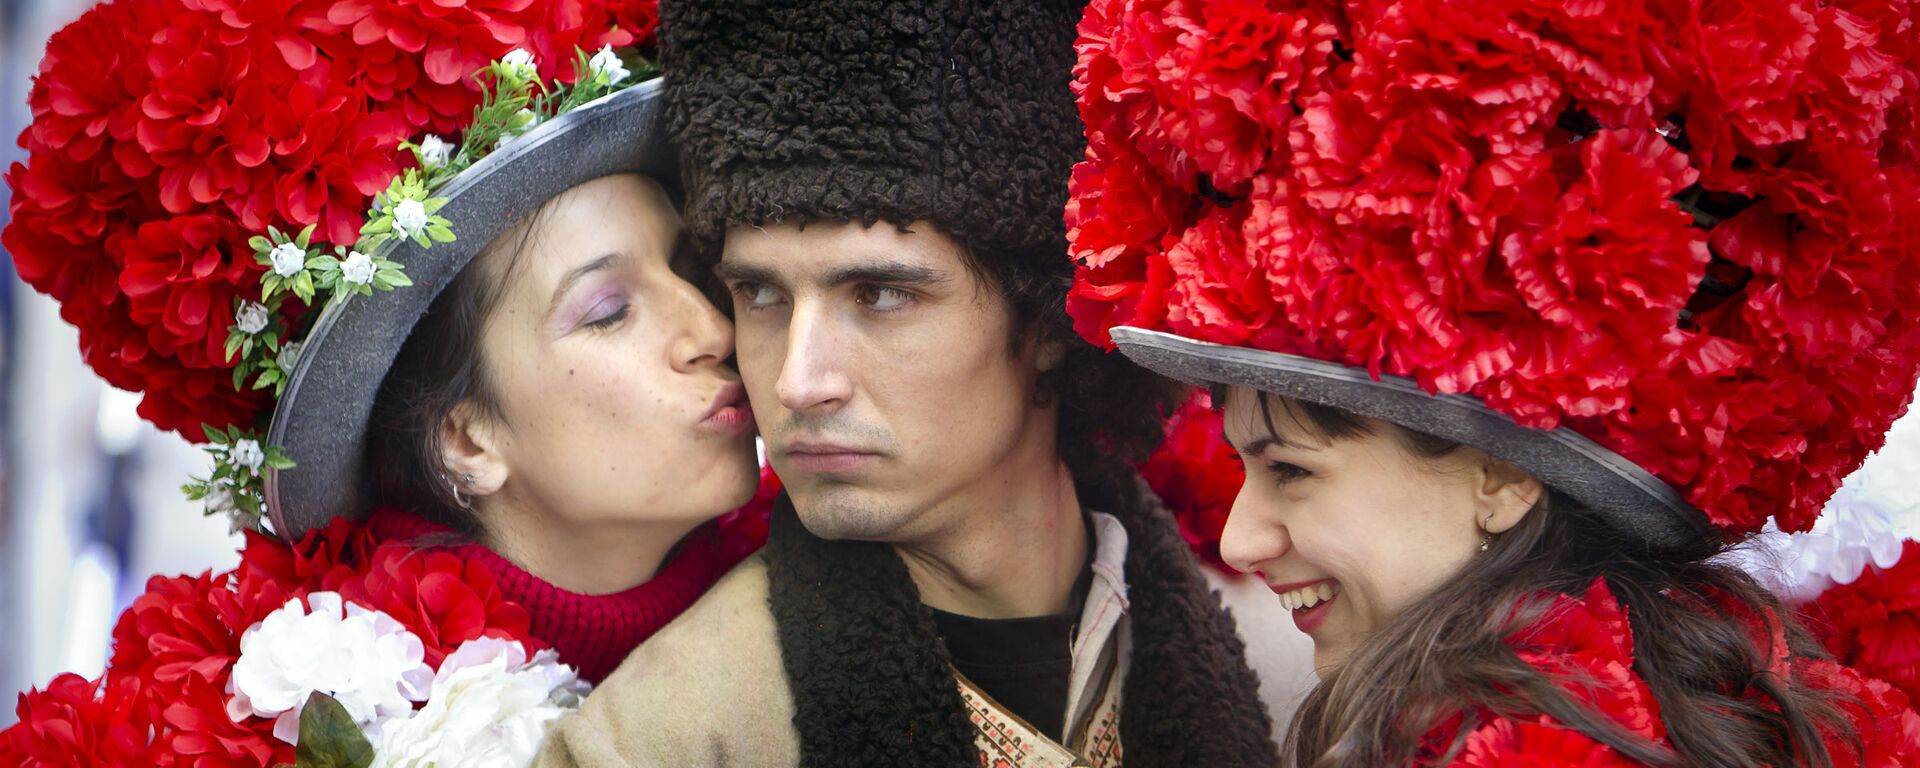 Юноша в традиционном румынском костюме в окружении девушек в цветочных нарядах в Бухаресте - Sputnik Латвия, 1920, 14.04.2020